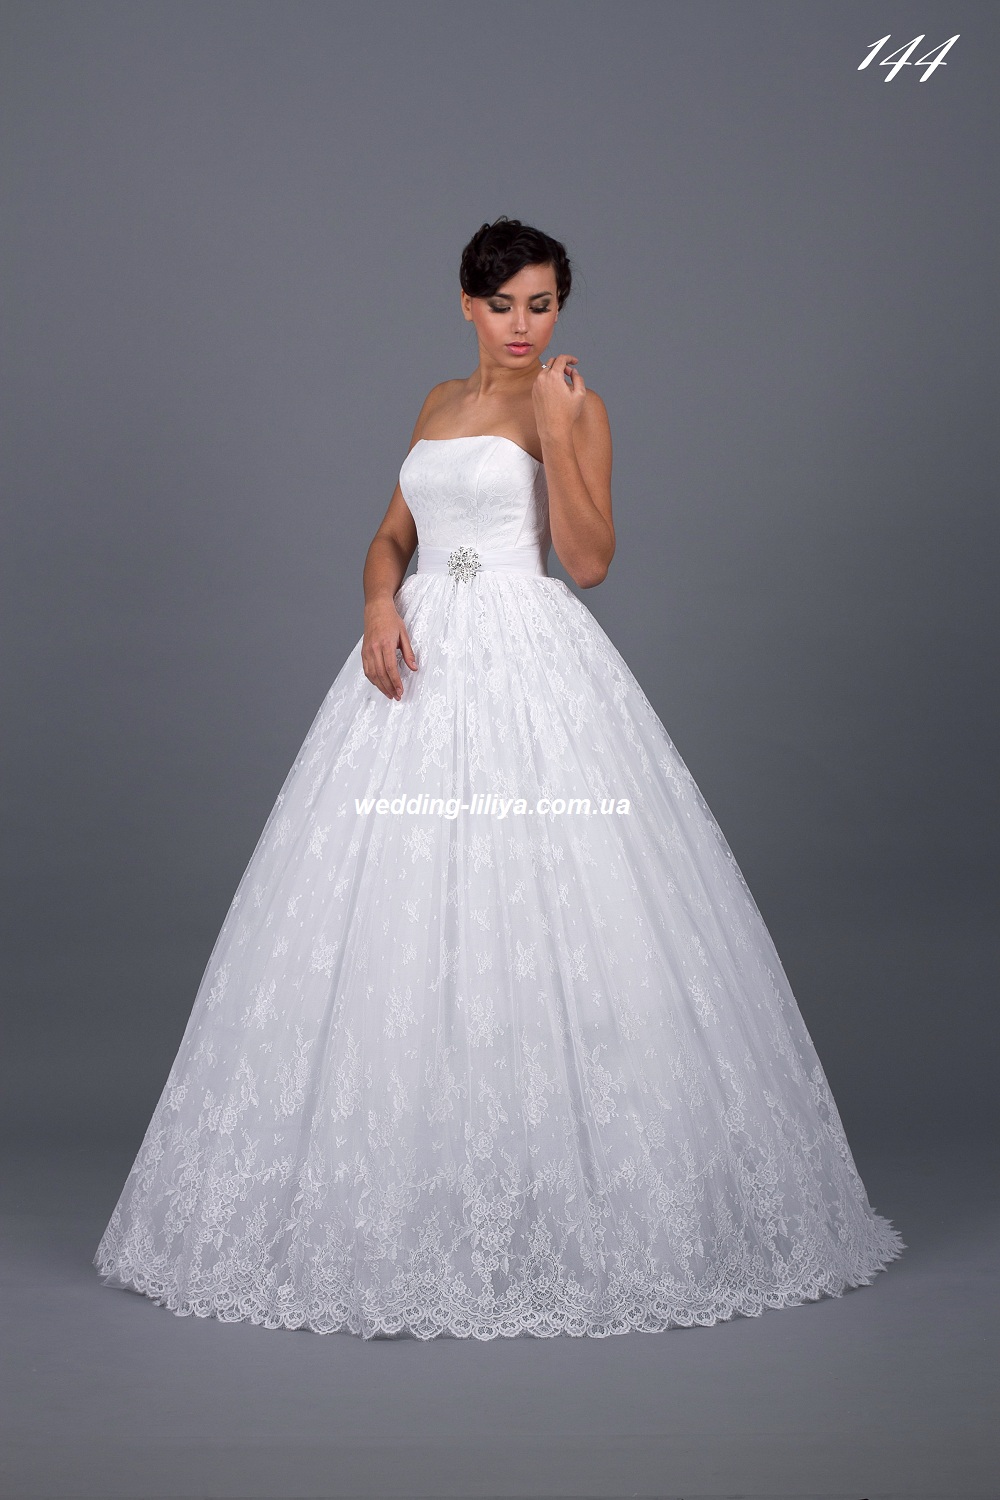 Свадебное платье №144